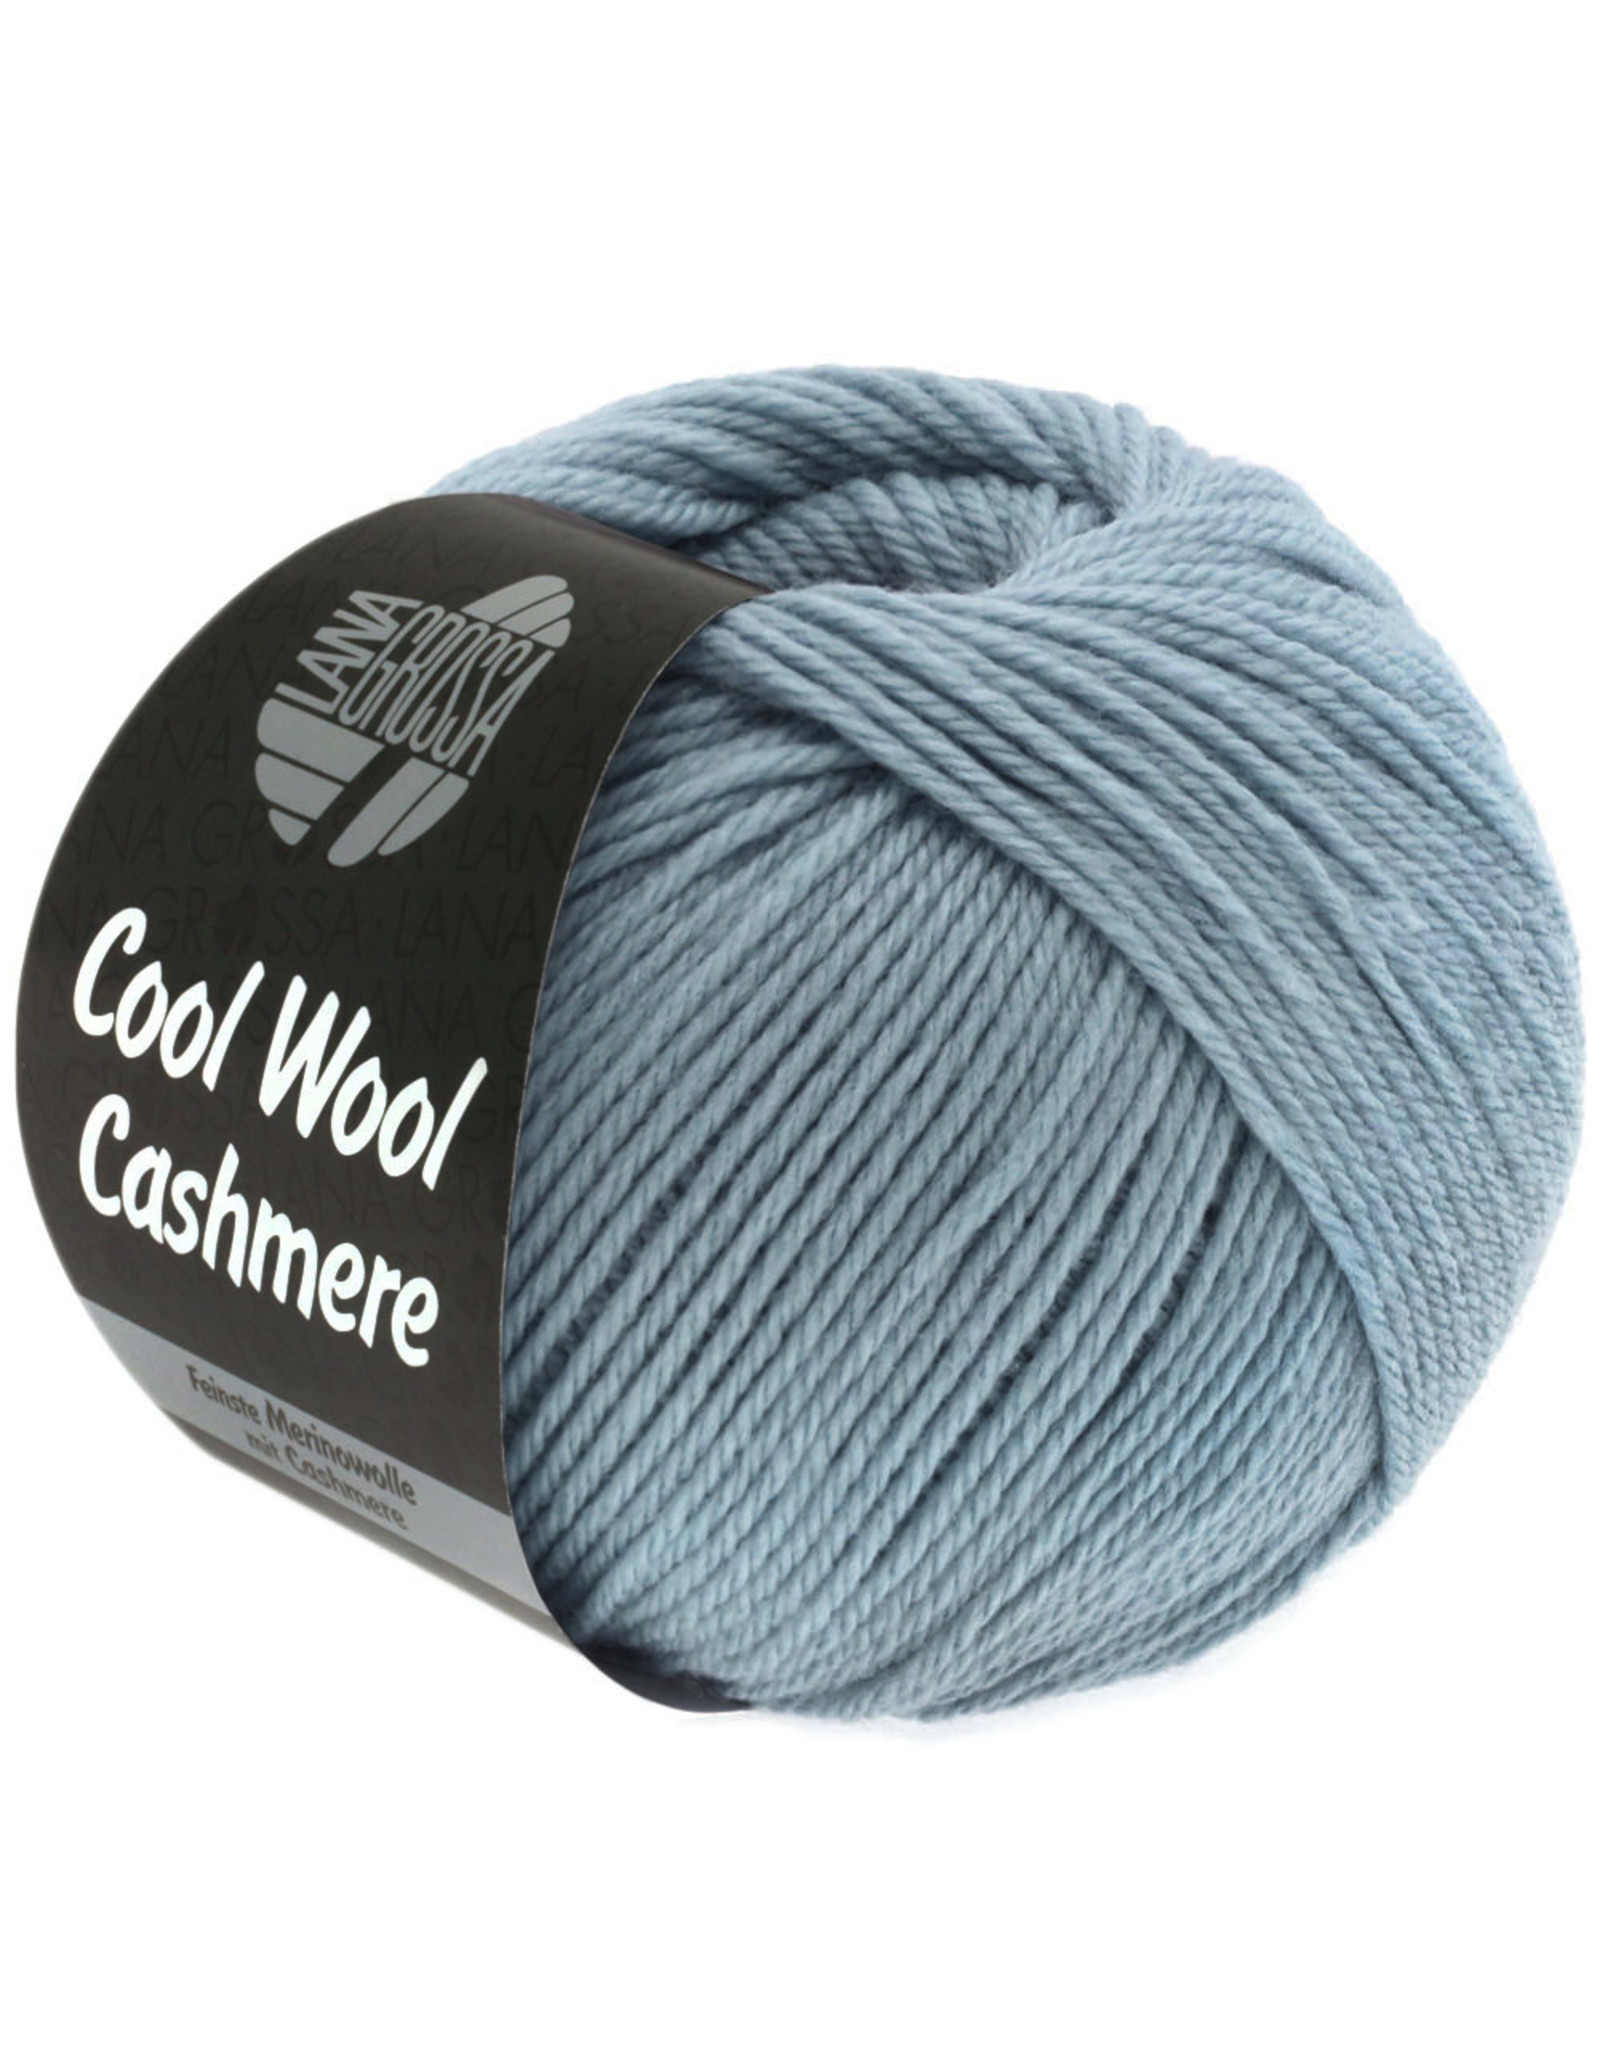 Lana Grossa Lana Grossa Cool wool Cashmere 025